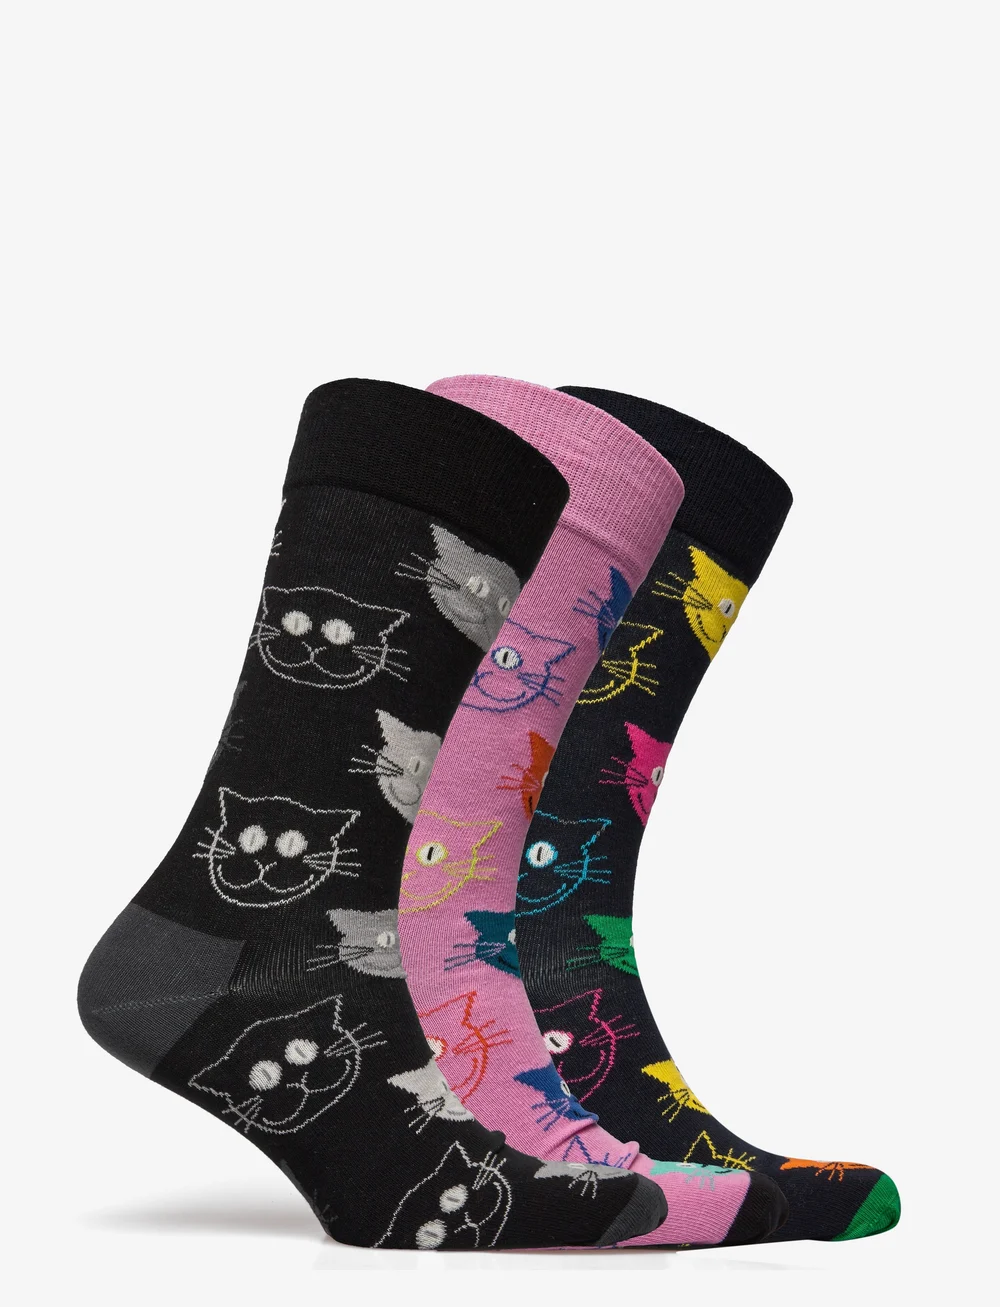 Happy Socks 3-pack Mixed Cat Socks Gift Set - Regular socks